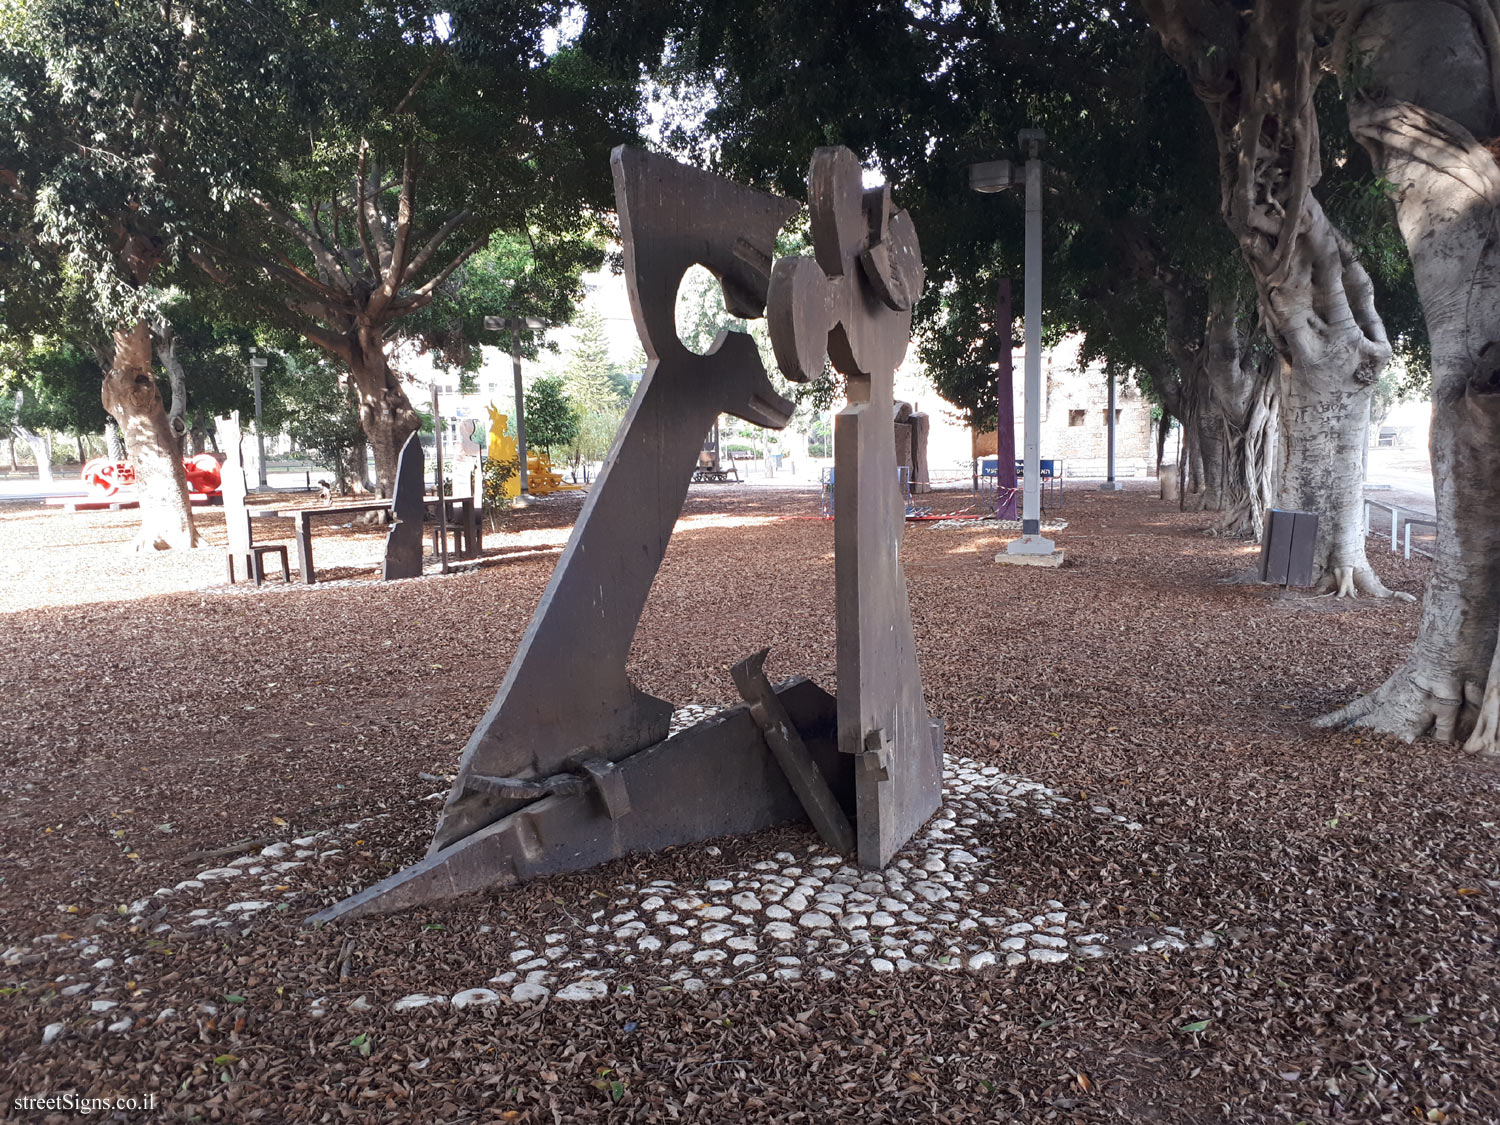 Tel Aviv - Tomarkin sculptures at Abu Nabot Park - Jerusalem